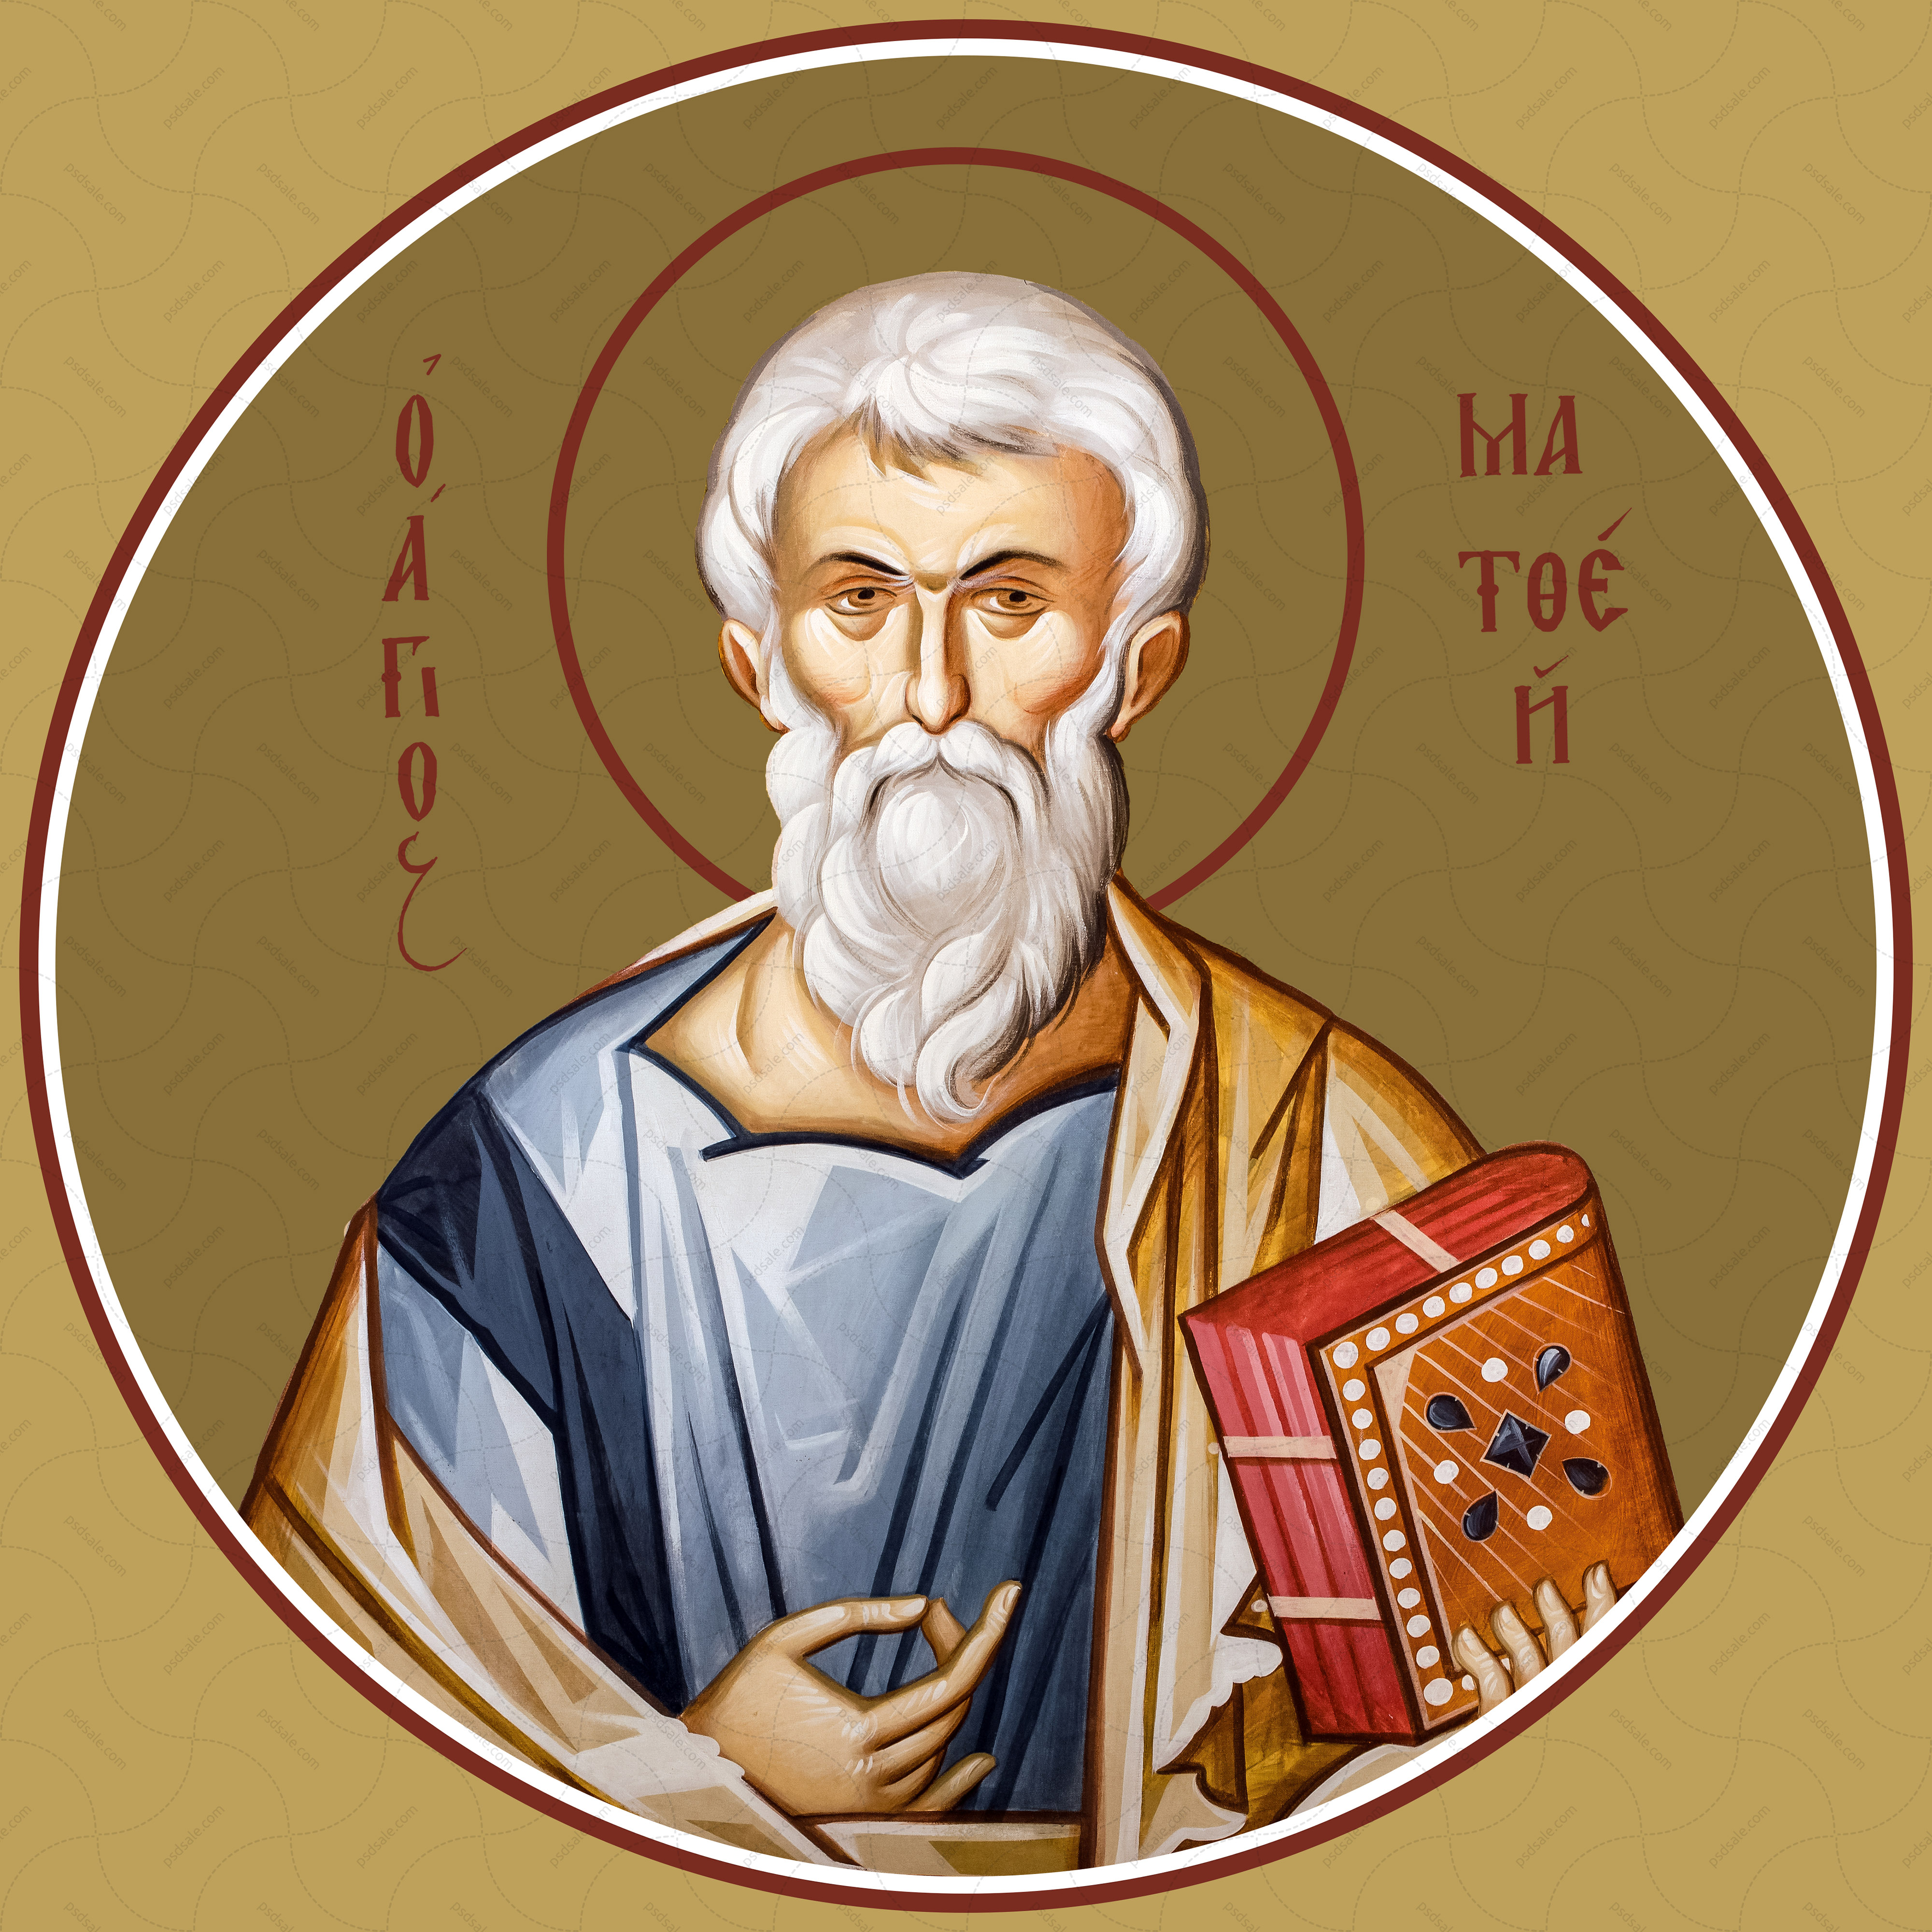 Matthew, the evangelist (for iconostasis)